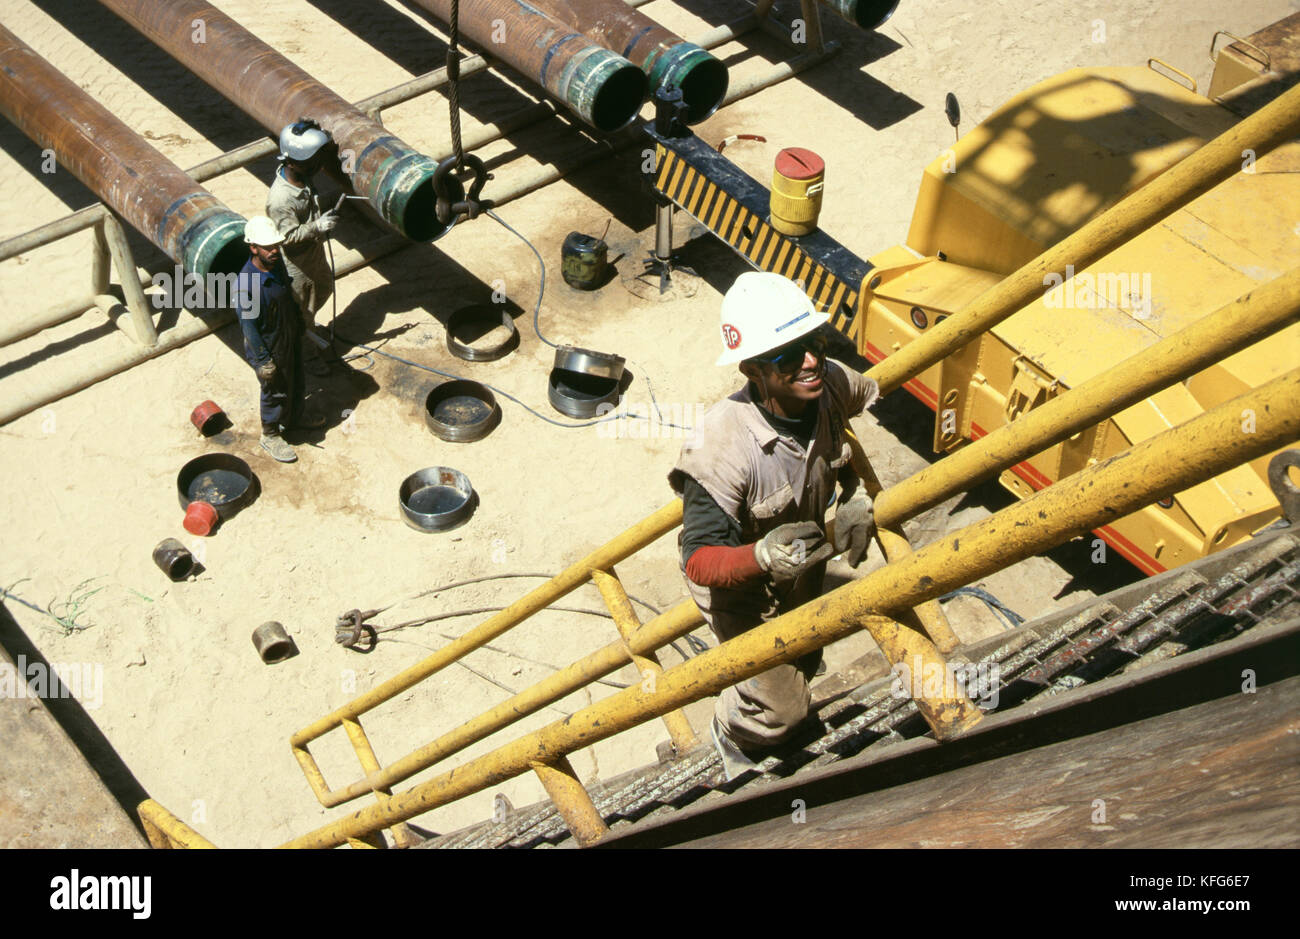 Eine Exploration von Öl und Gas rig in das Leere Viertel, in denen nachgewiesene Reserven sind reichlich und die schließlich werden in der shaybah Gas öl Luftzerlegungsanlage (gosp), eine große Gas-, Öl- und Produktionsstätte in das Leere Viertel Wüste Saudi Arabiens, in der Nähe der Grenze zu den Vereinigten Arabischen Emiraten. Stockfoto